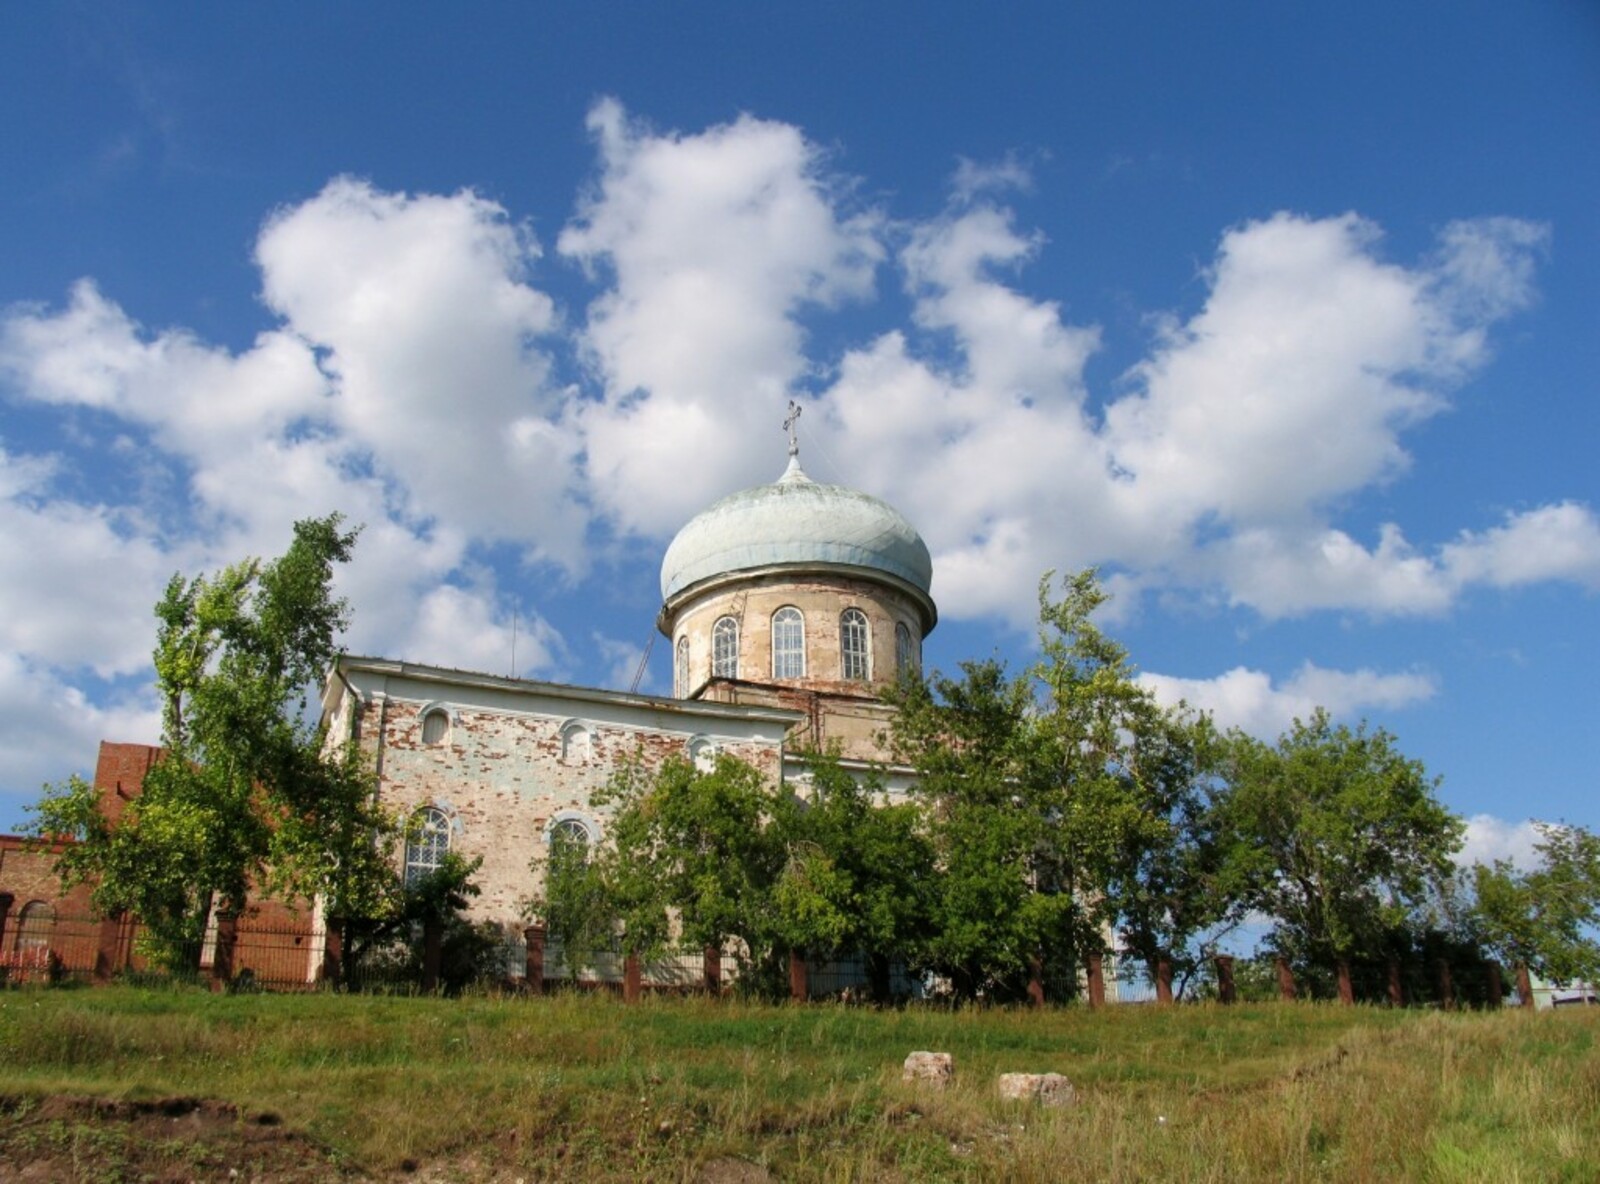 Бирский Михаило-Архангельский храм на Галкиной горе. Фото 2005 года.